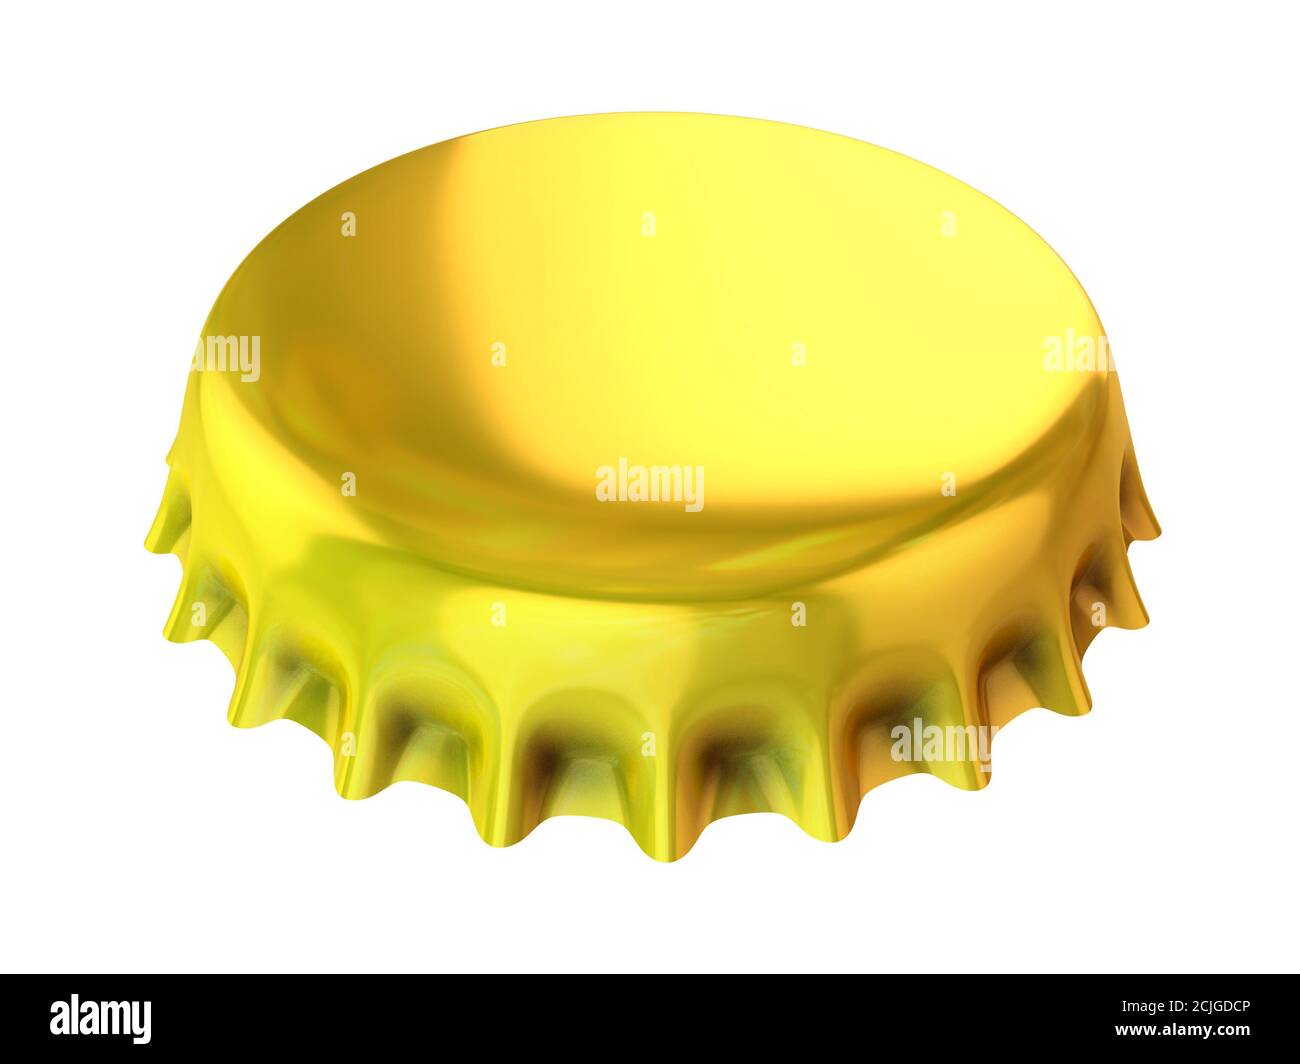 golden bottle cap 3d illustration Stock Photo